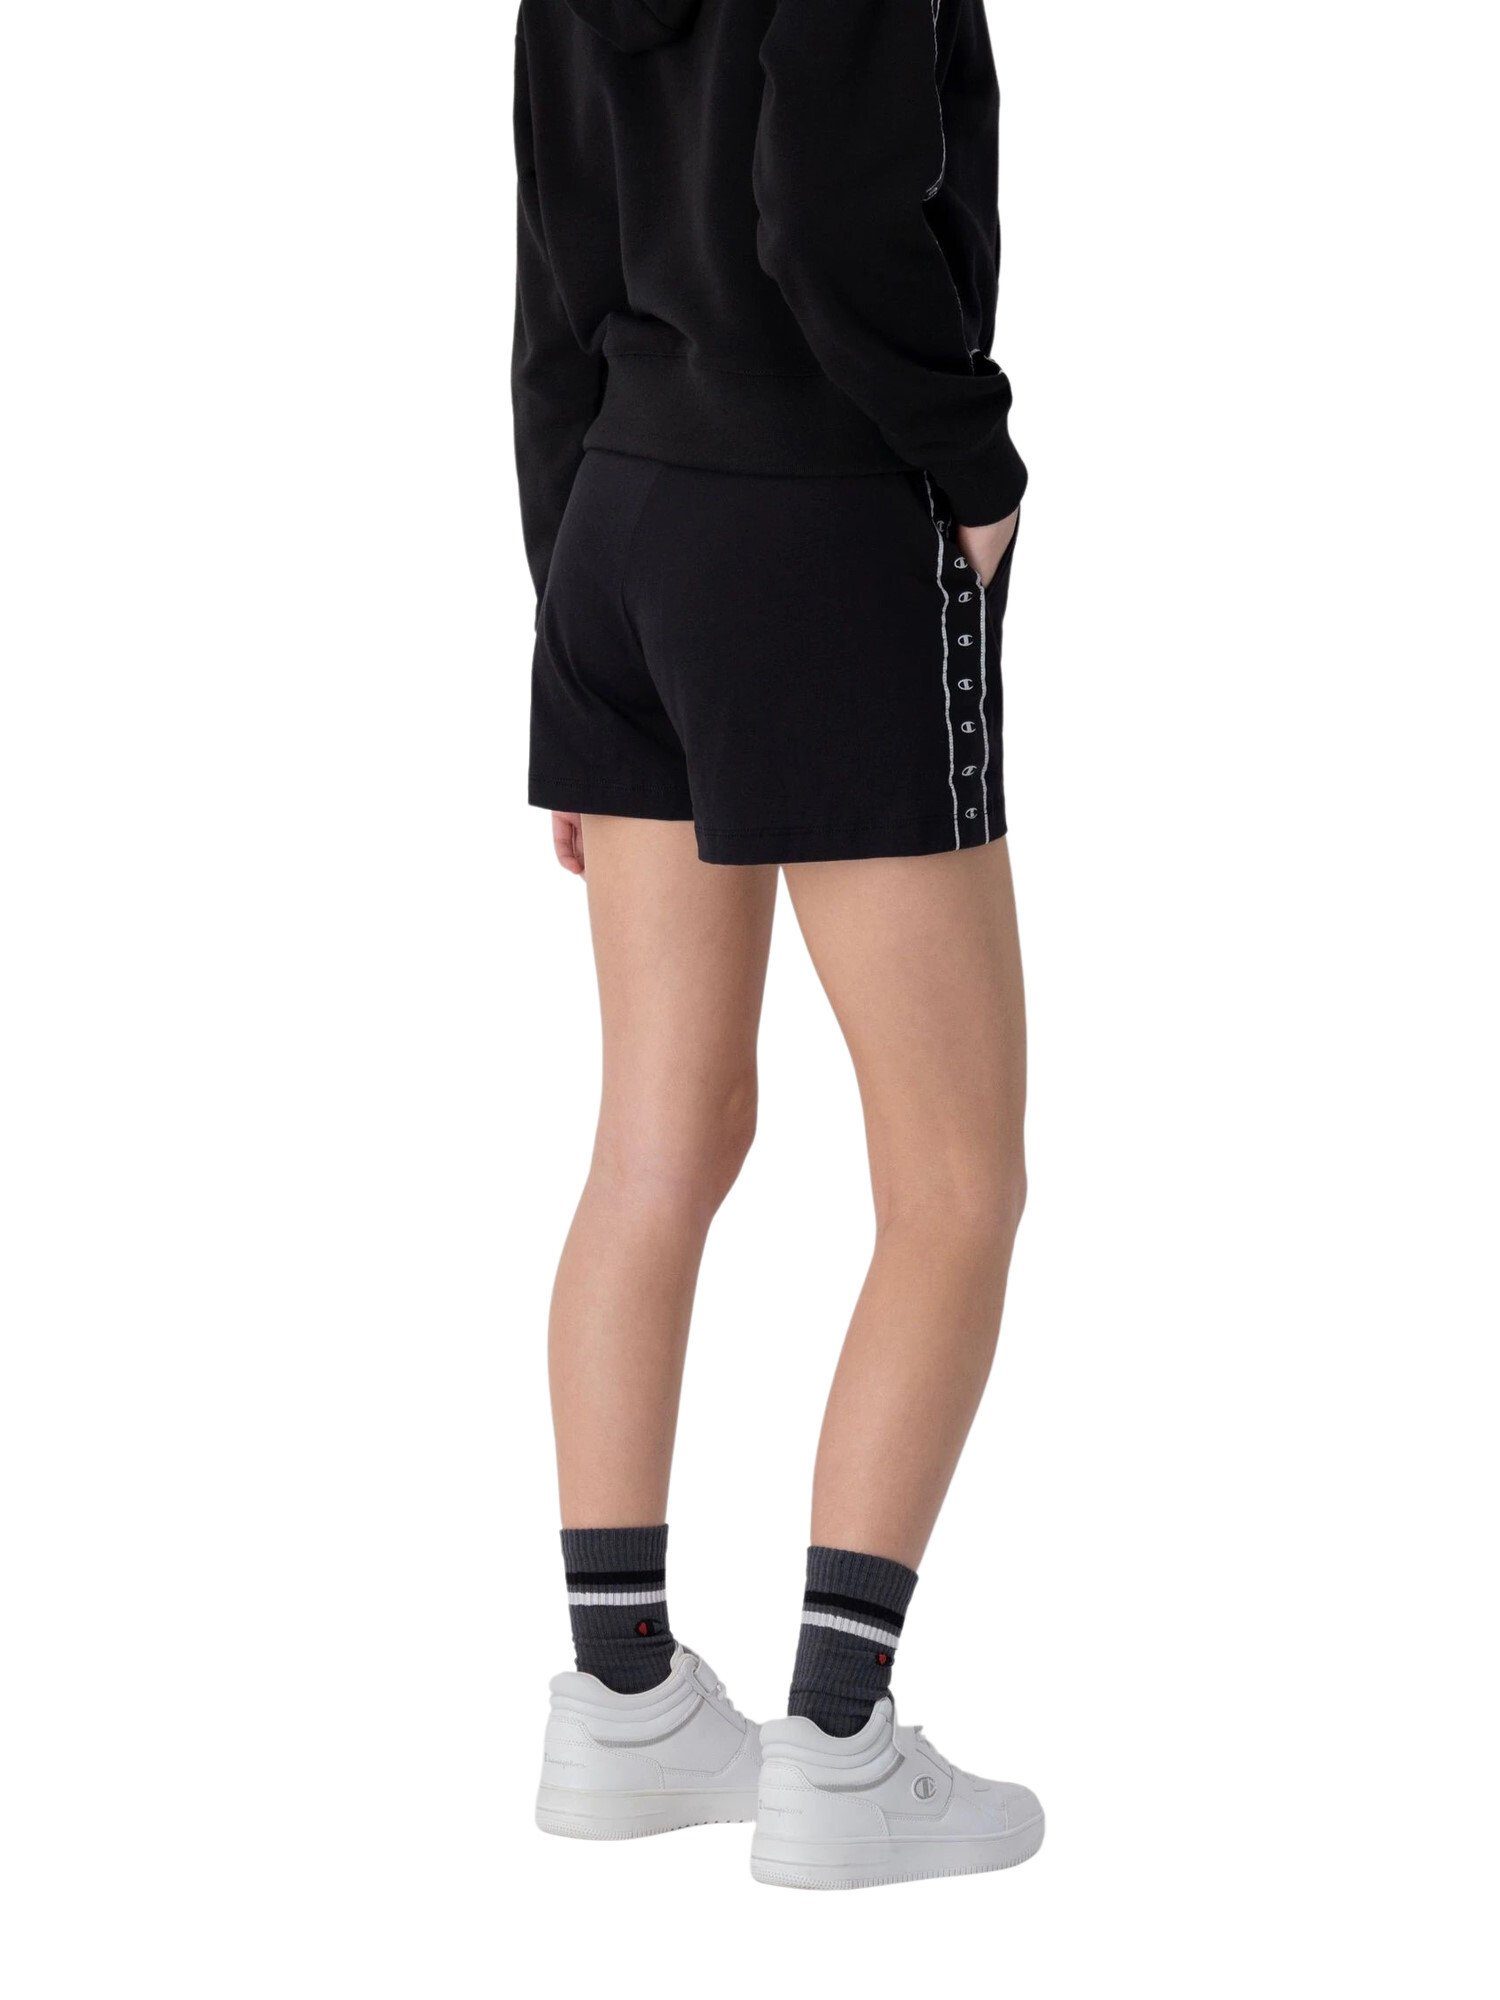 Champion Sweatshorts Shorts Baumwoll-Shorts mit Fronttaschen